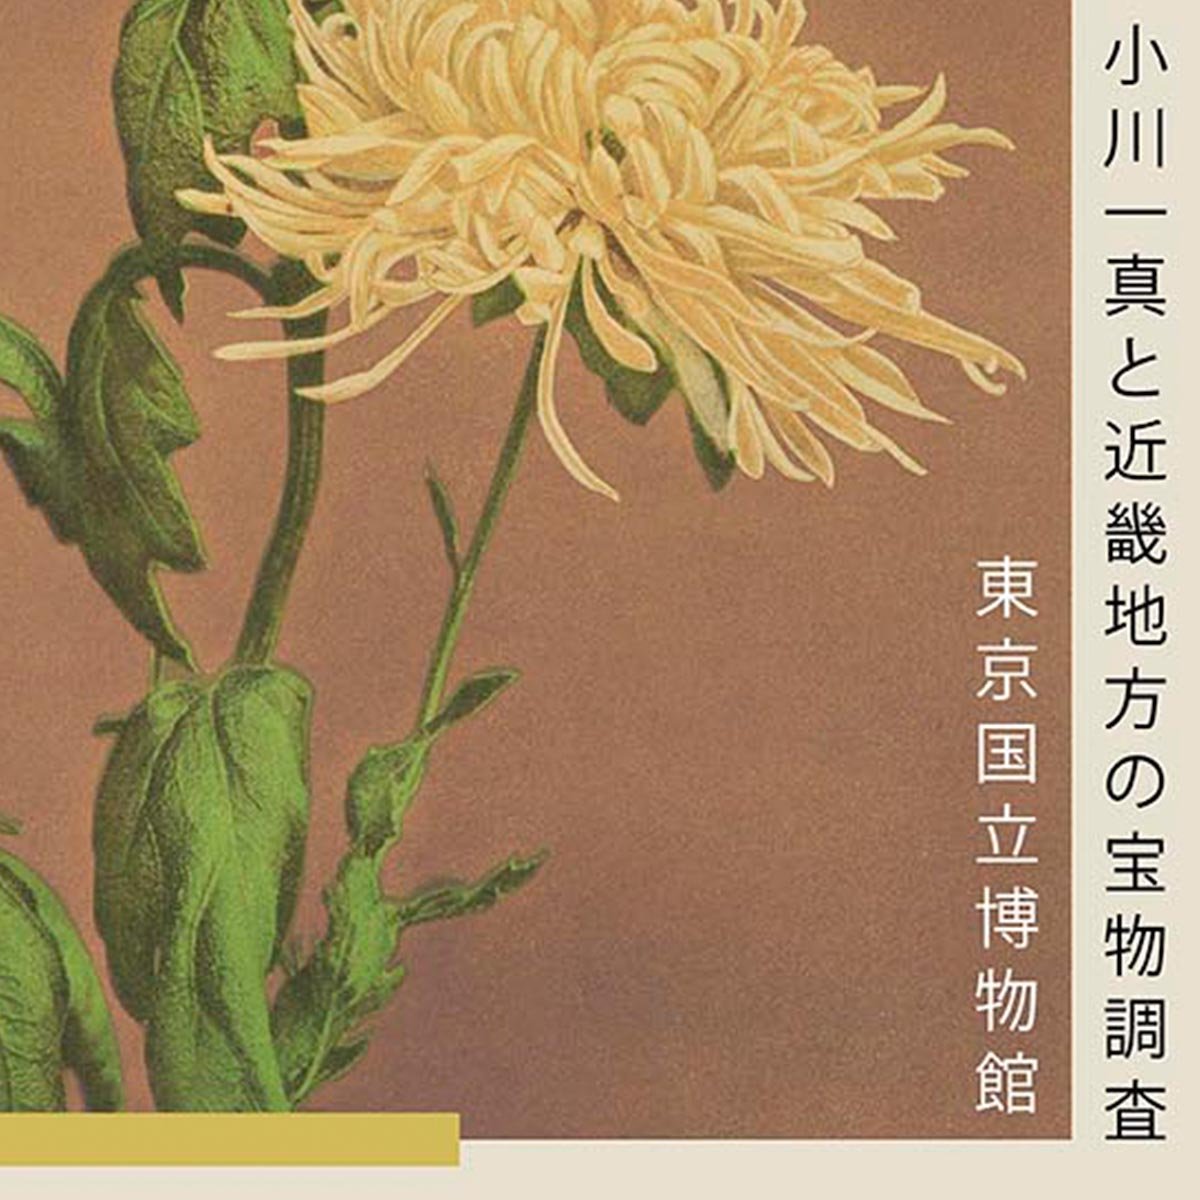 Three Yellow Chrysanthemum by Kazumasa Exhibition Poster